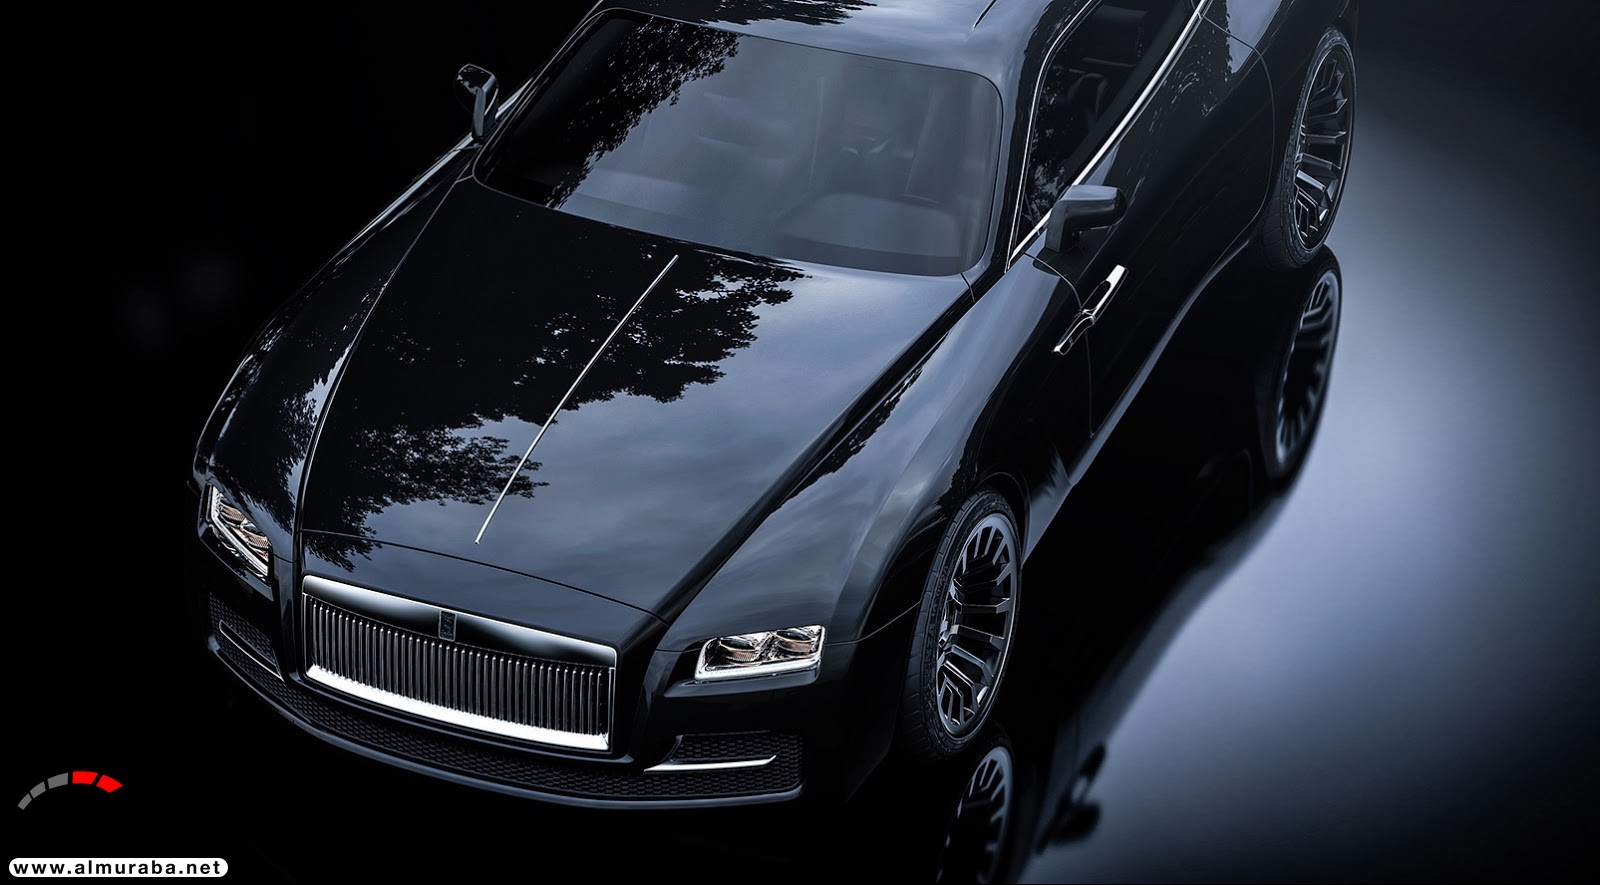 "صور افتراضية" لما يمكن أن تبدو عليه "رولز رويس" رايث كوبيه 2020 Rolls-Royce Wraith Coupe 71